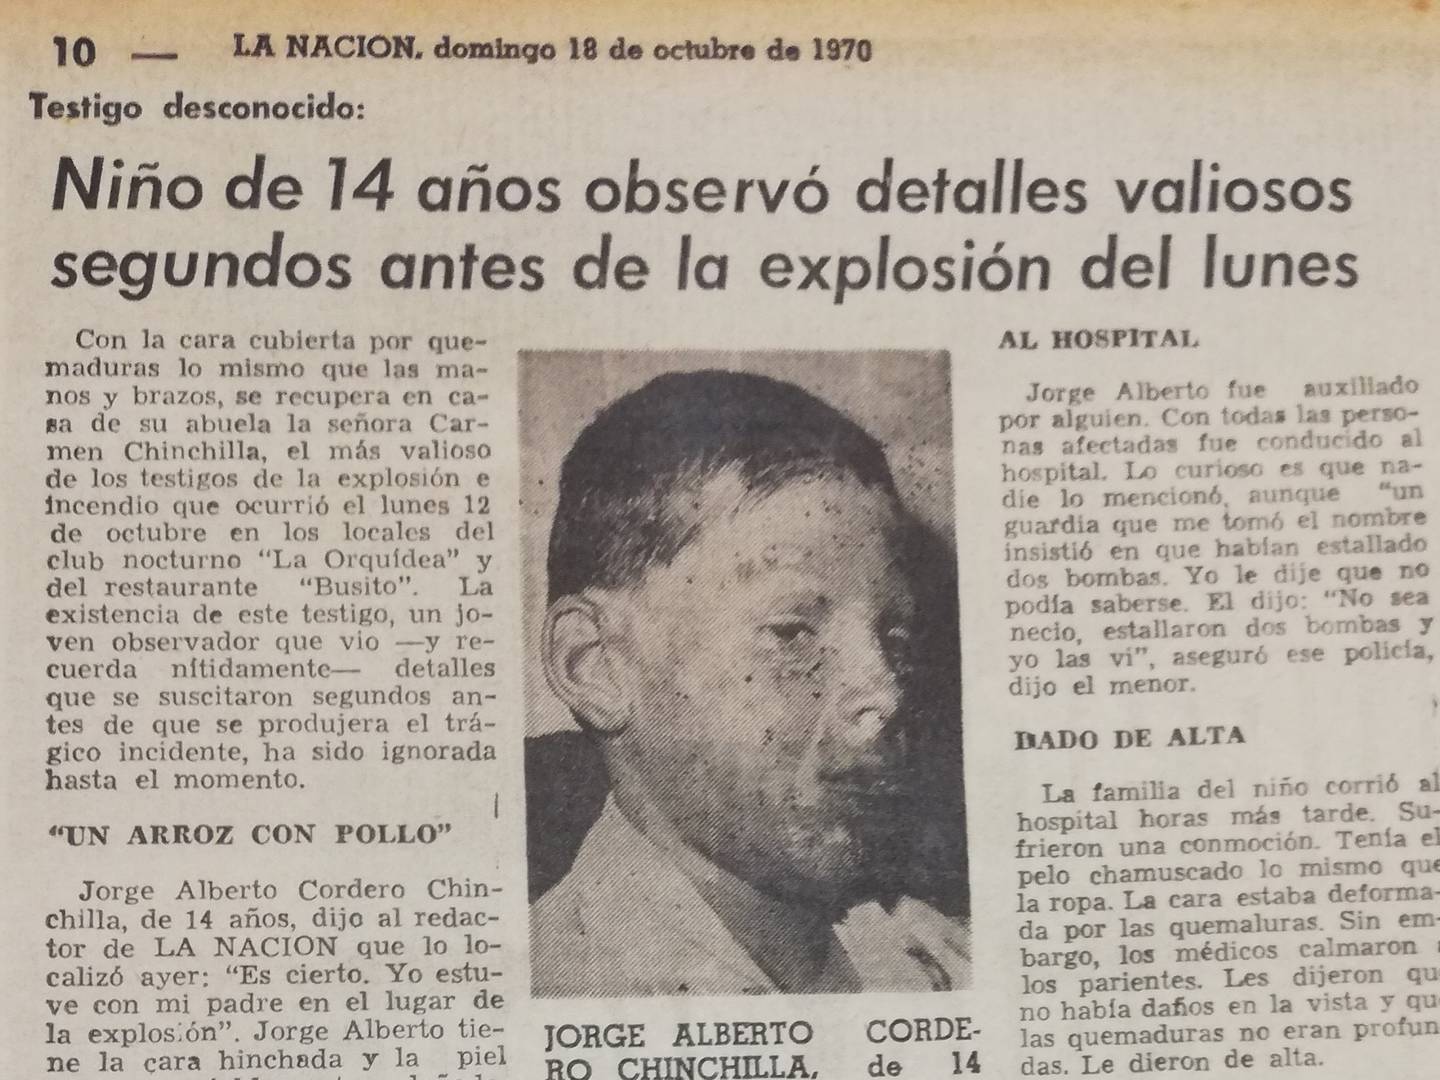 El 12 de octubre de 1970, Costa Rica vivió lo que se considera como la primera explosión, registrada por los medios de comunicación, de cilindros de gas, Jorge Alberto Cordero Chinchilla tenía 14 años y fue uno de los afectados.